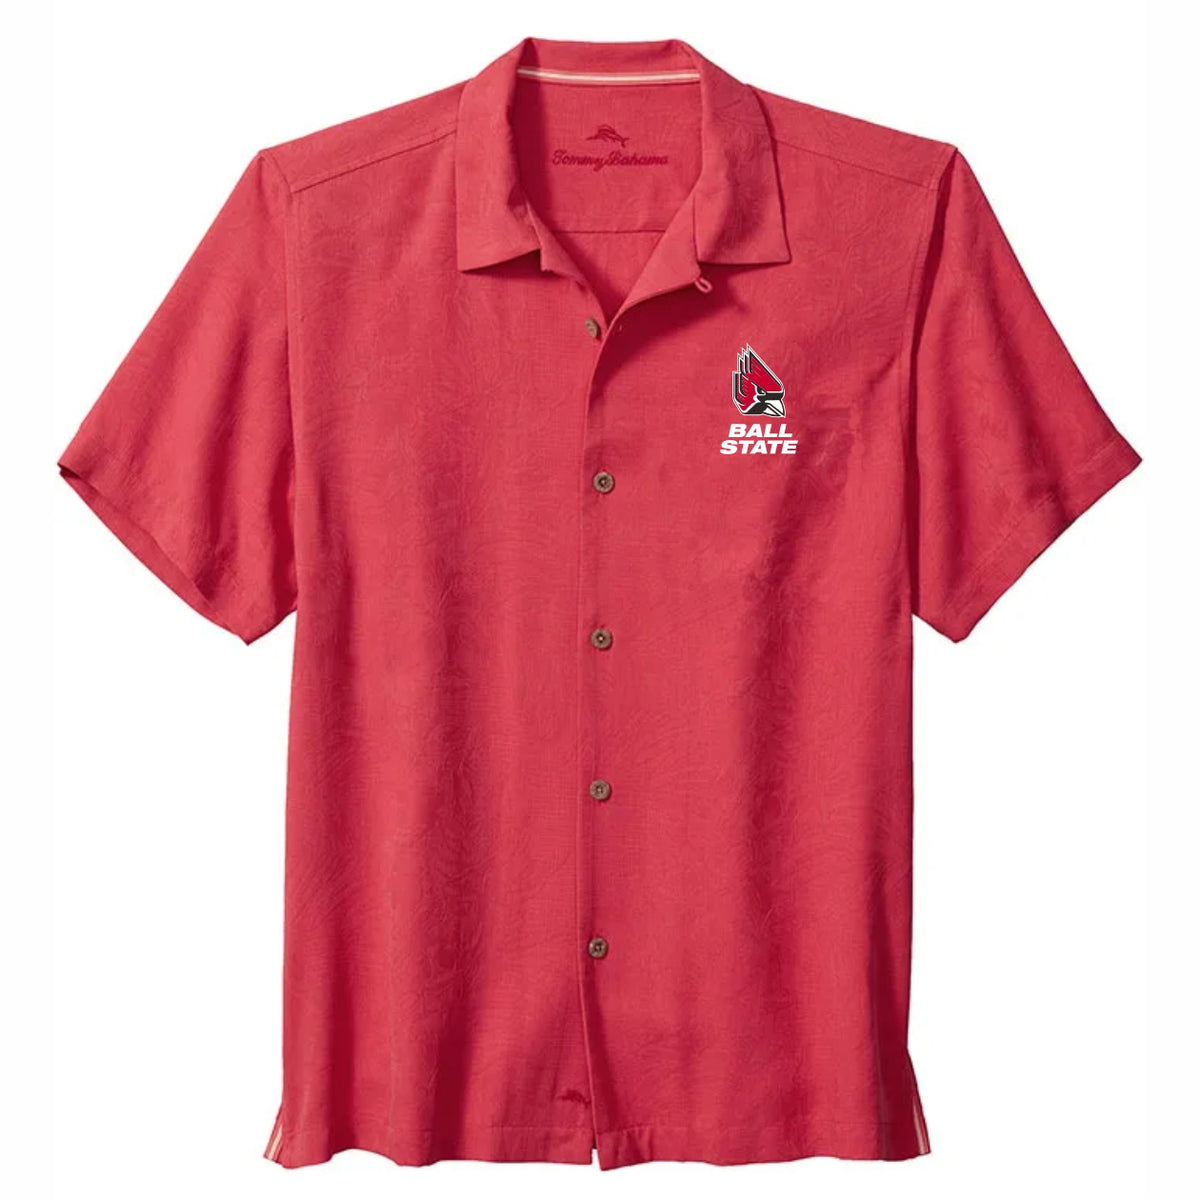 Tommy Bahama Announces 2011 'Collector's Edition' Major League Baseball  Team Shirts